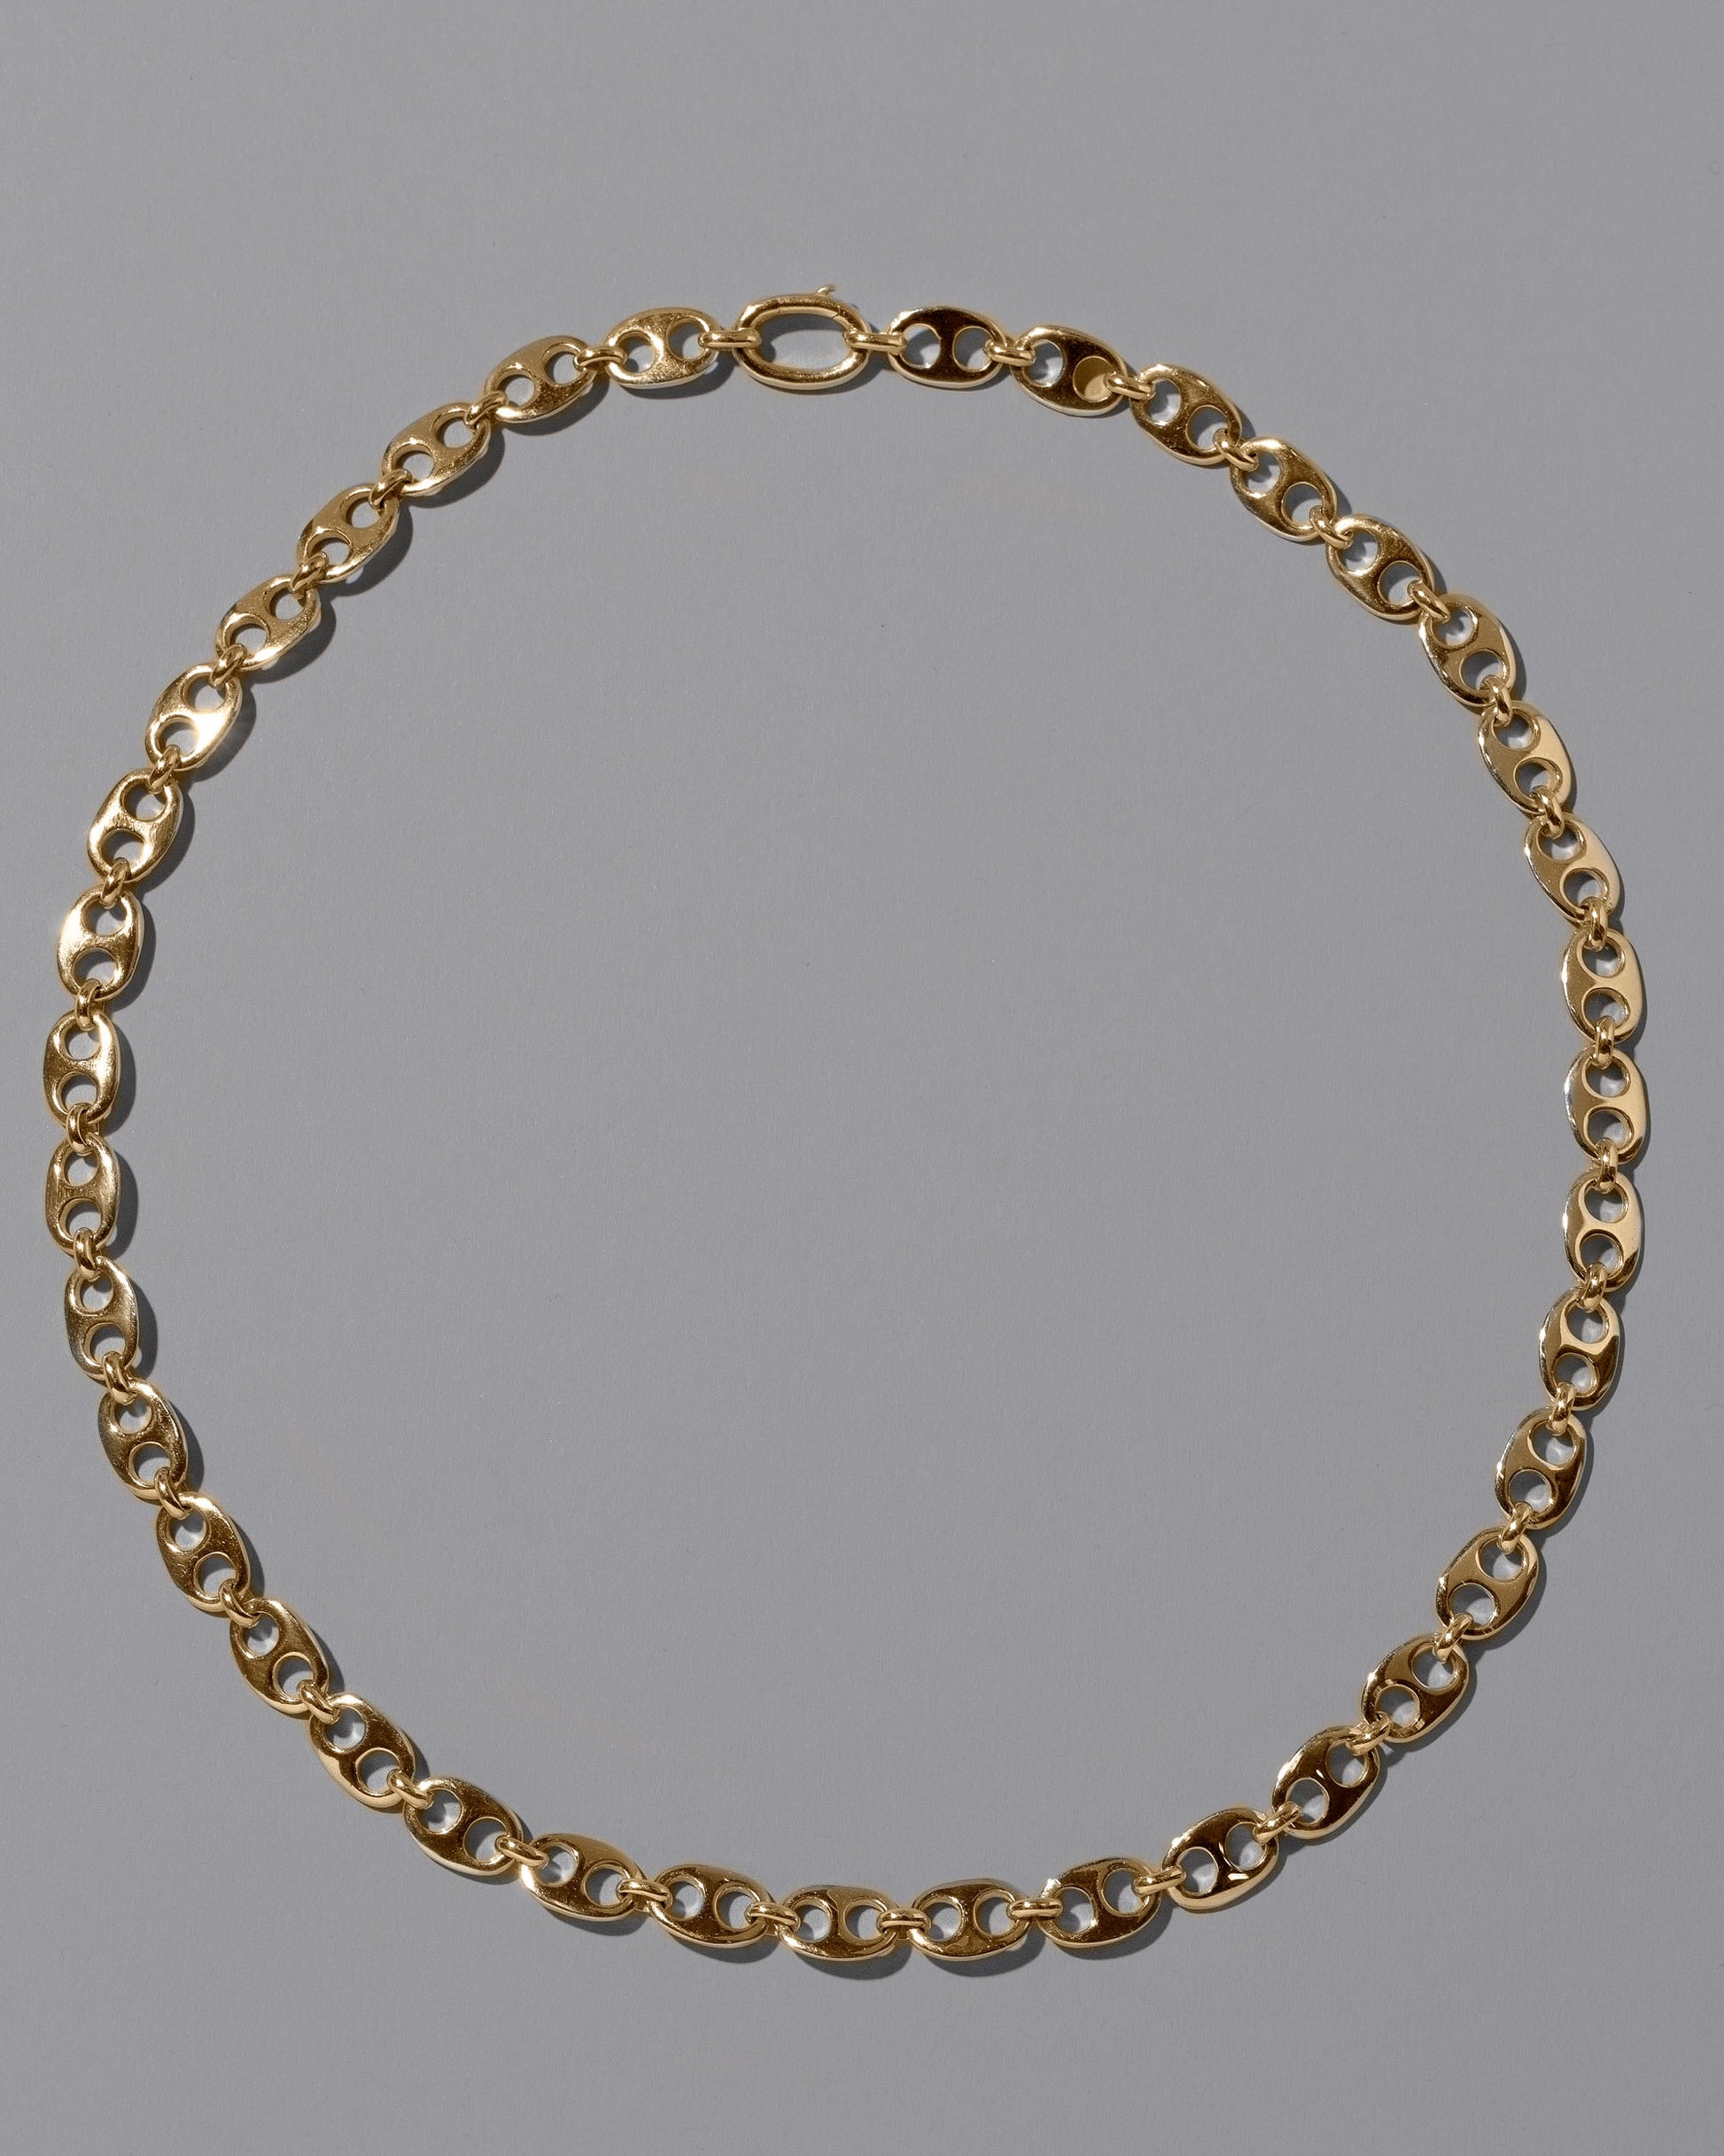 CRZM 22k Gold Yuba Mini Necklace on light color background.